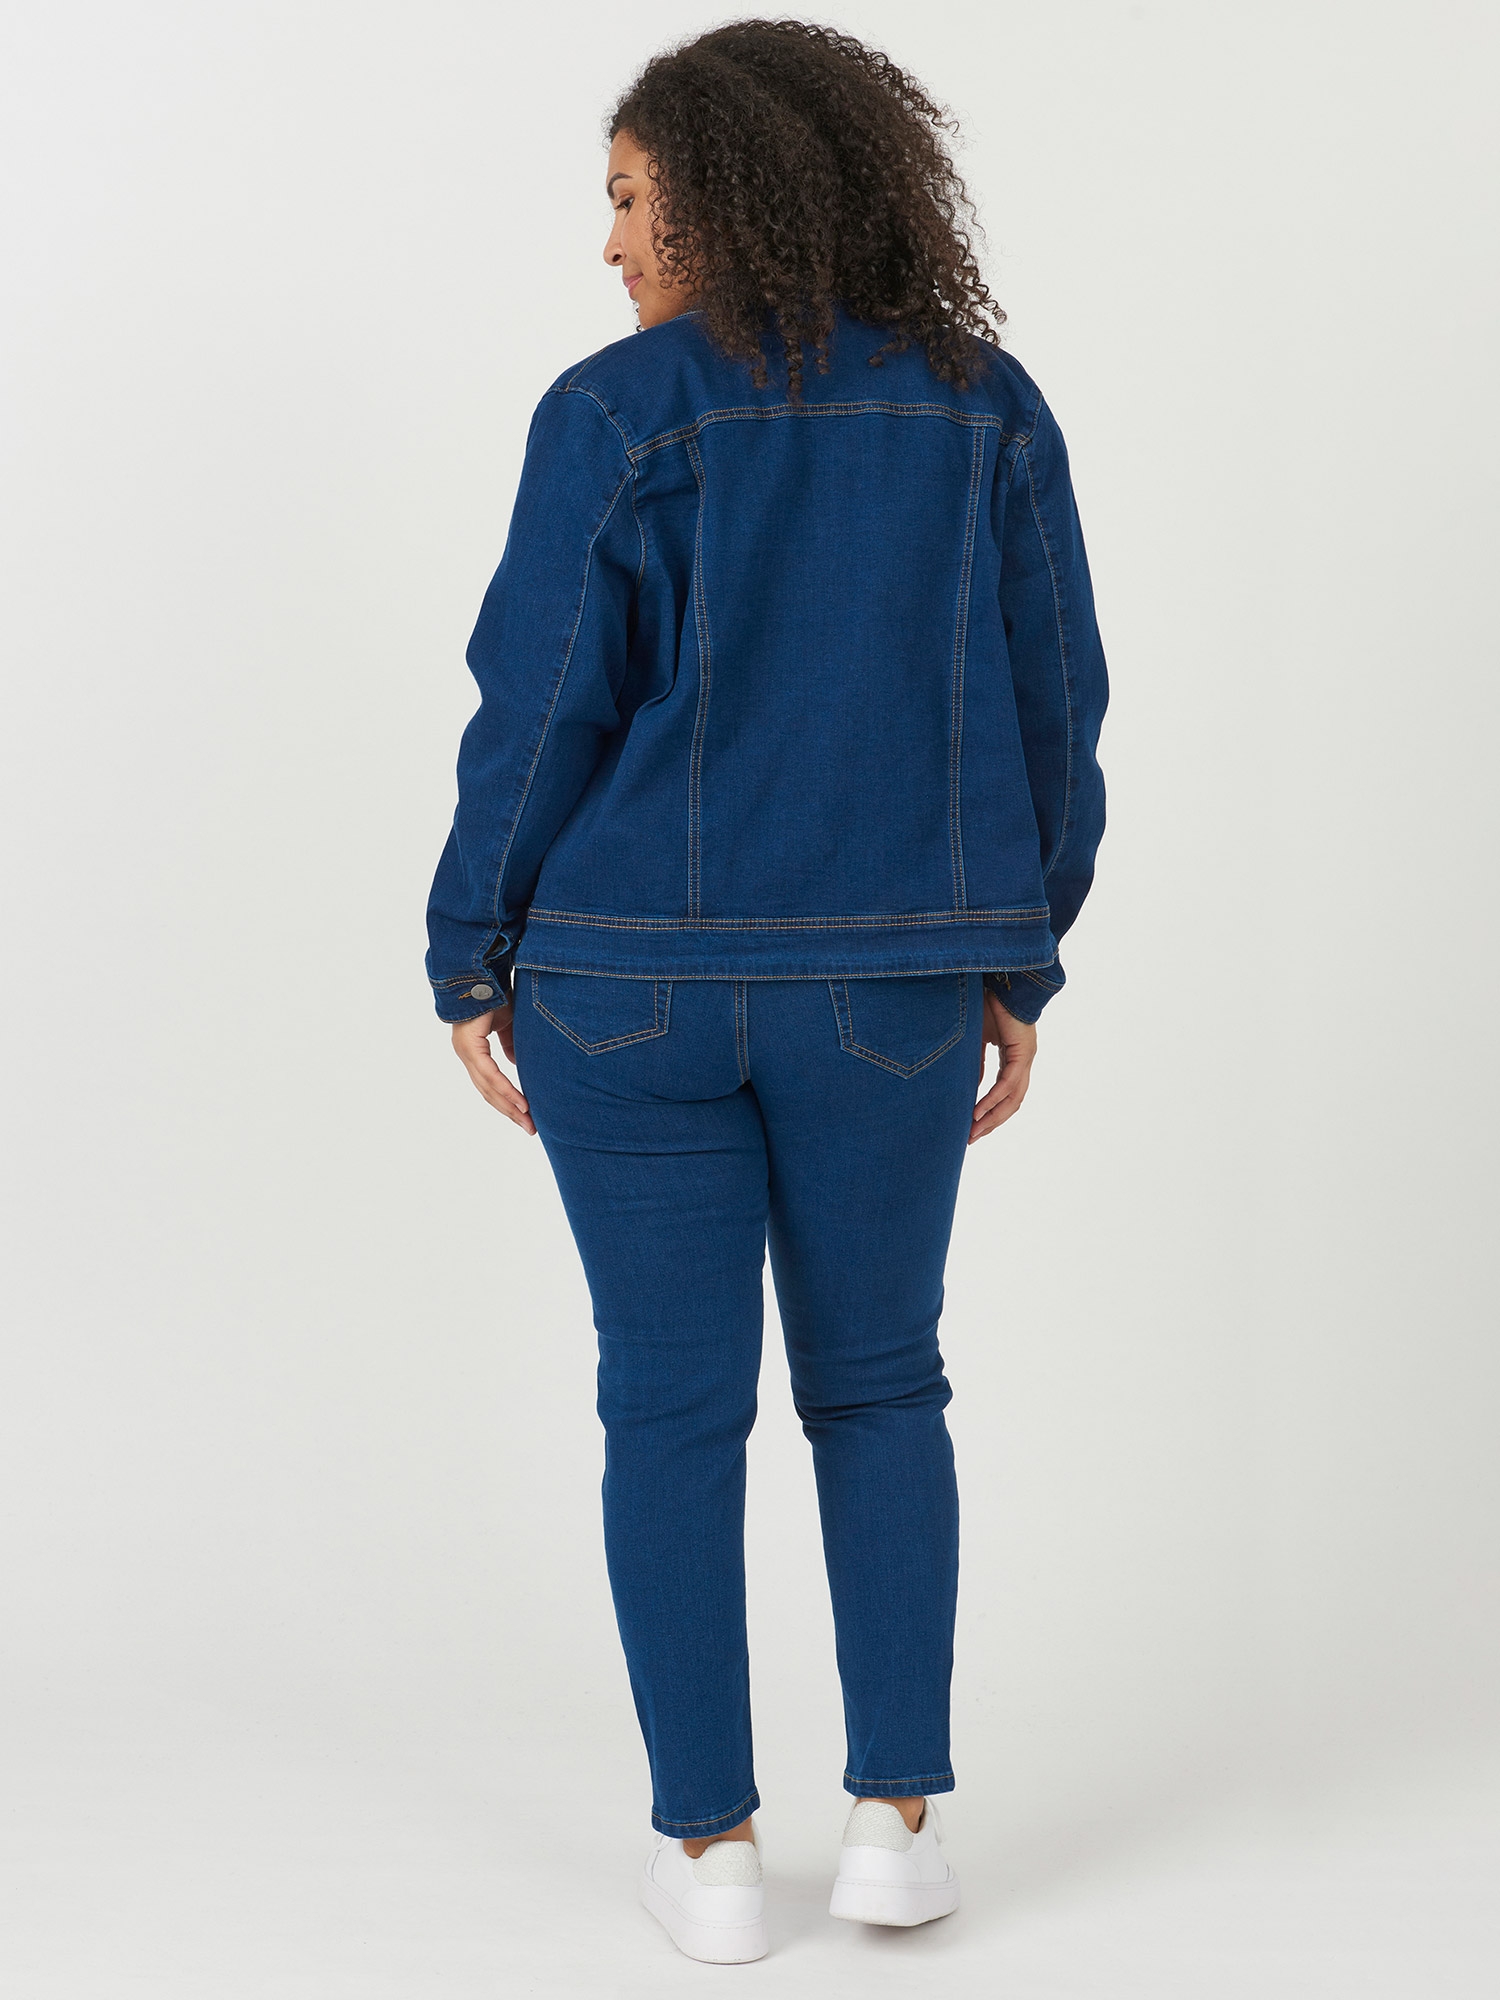 COMO - Mørkeblå denim jakke fra Adia